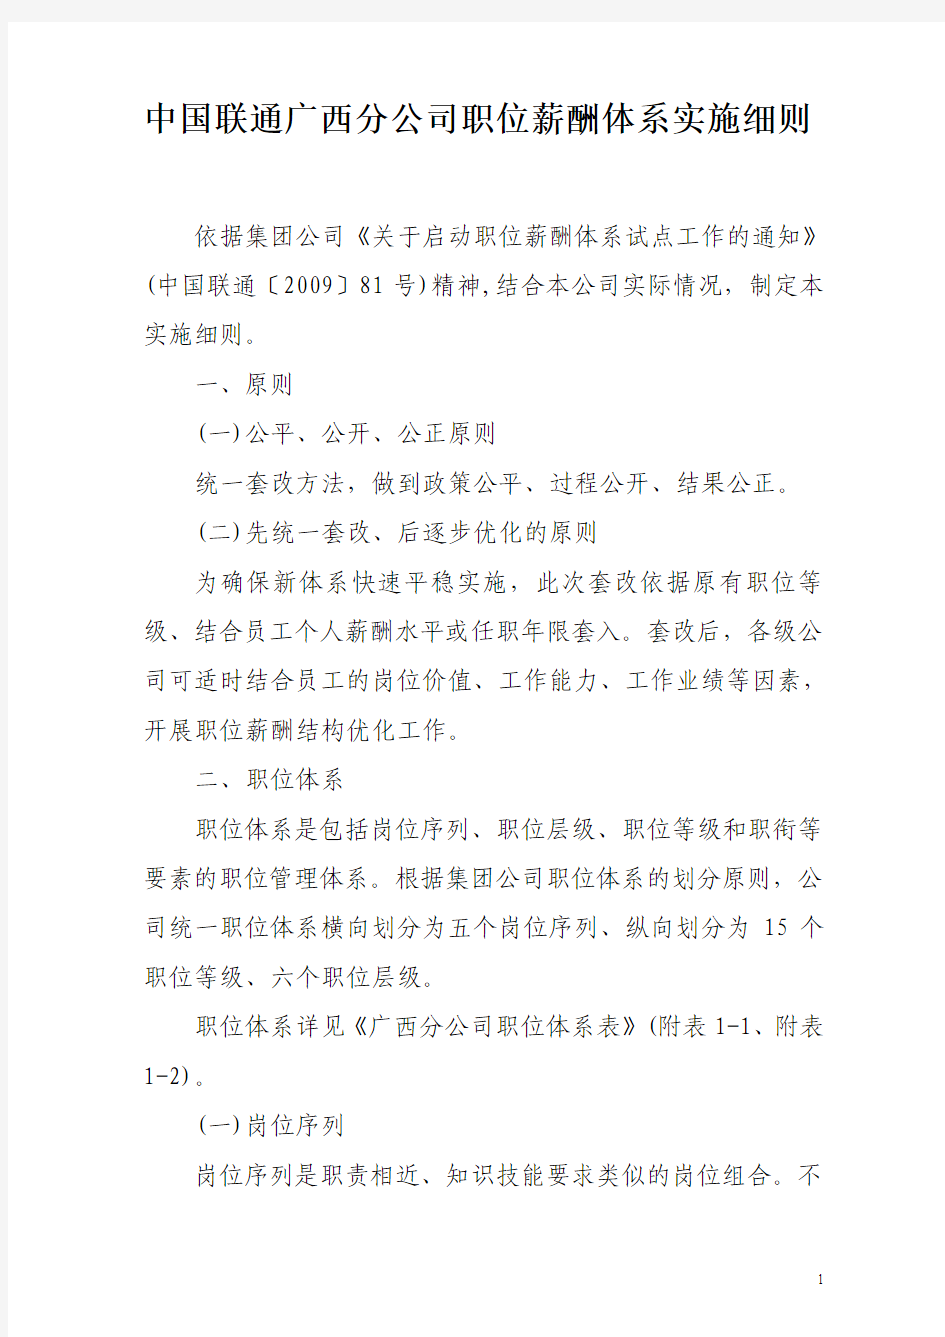 中国联通广西省分公司职位薪酬体系